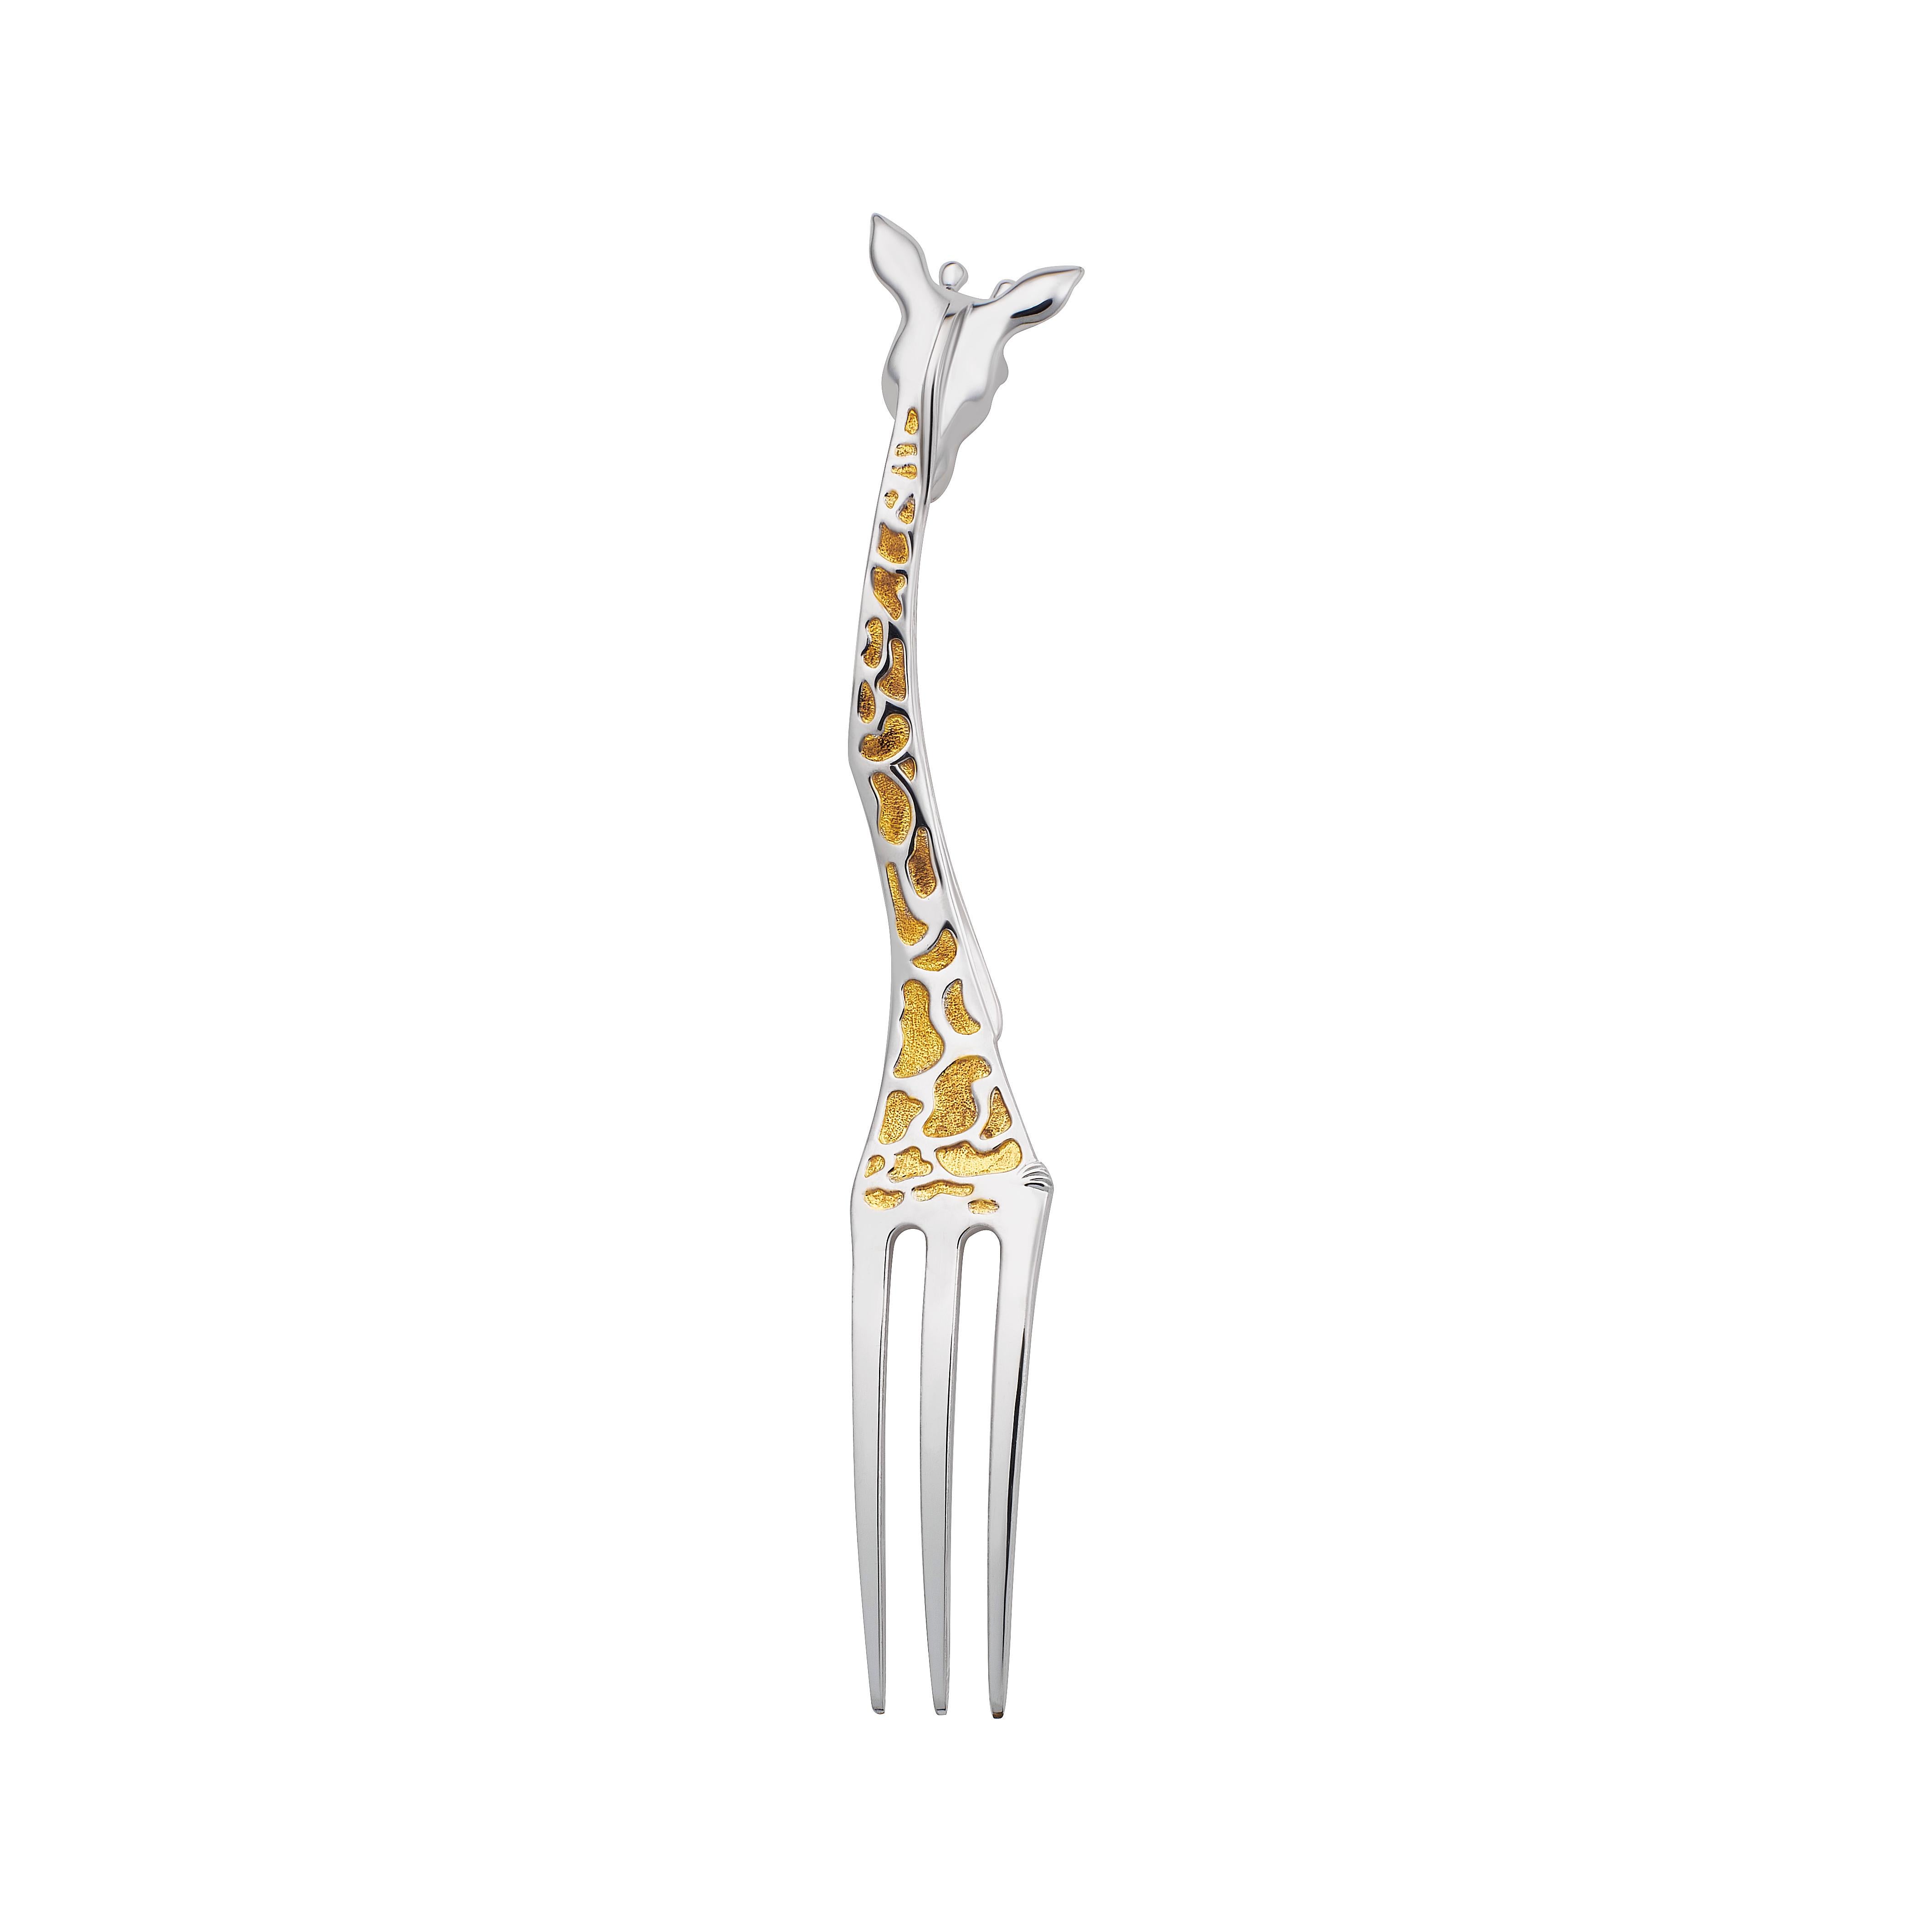 Une adorable et luxueuse fourchette girafe de MOISEIKIN®  est composé de  argent sterling 925 avec indium, rhodium et dorure soignée. L'ajout d'indium permet de préserver l'aspect brillant et la durabilité de l'appareil  une fine couche de métal du